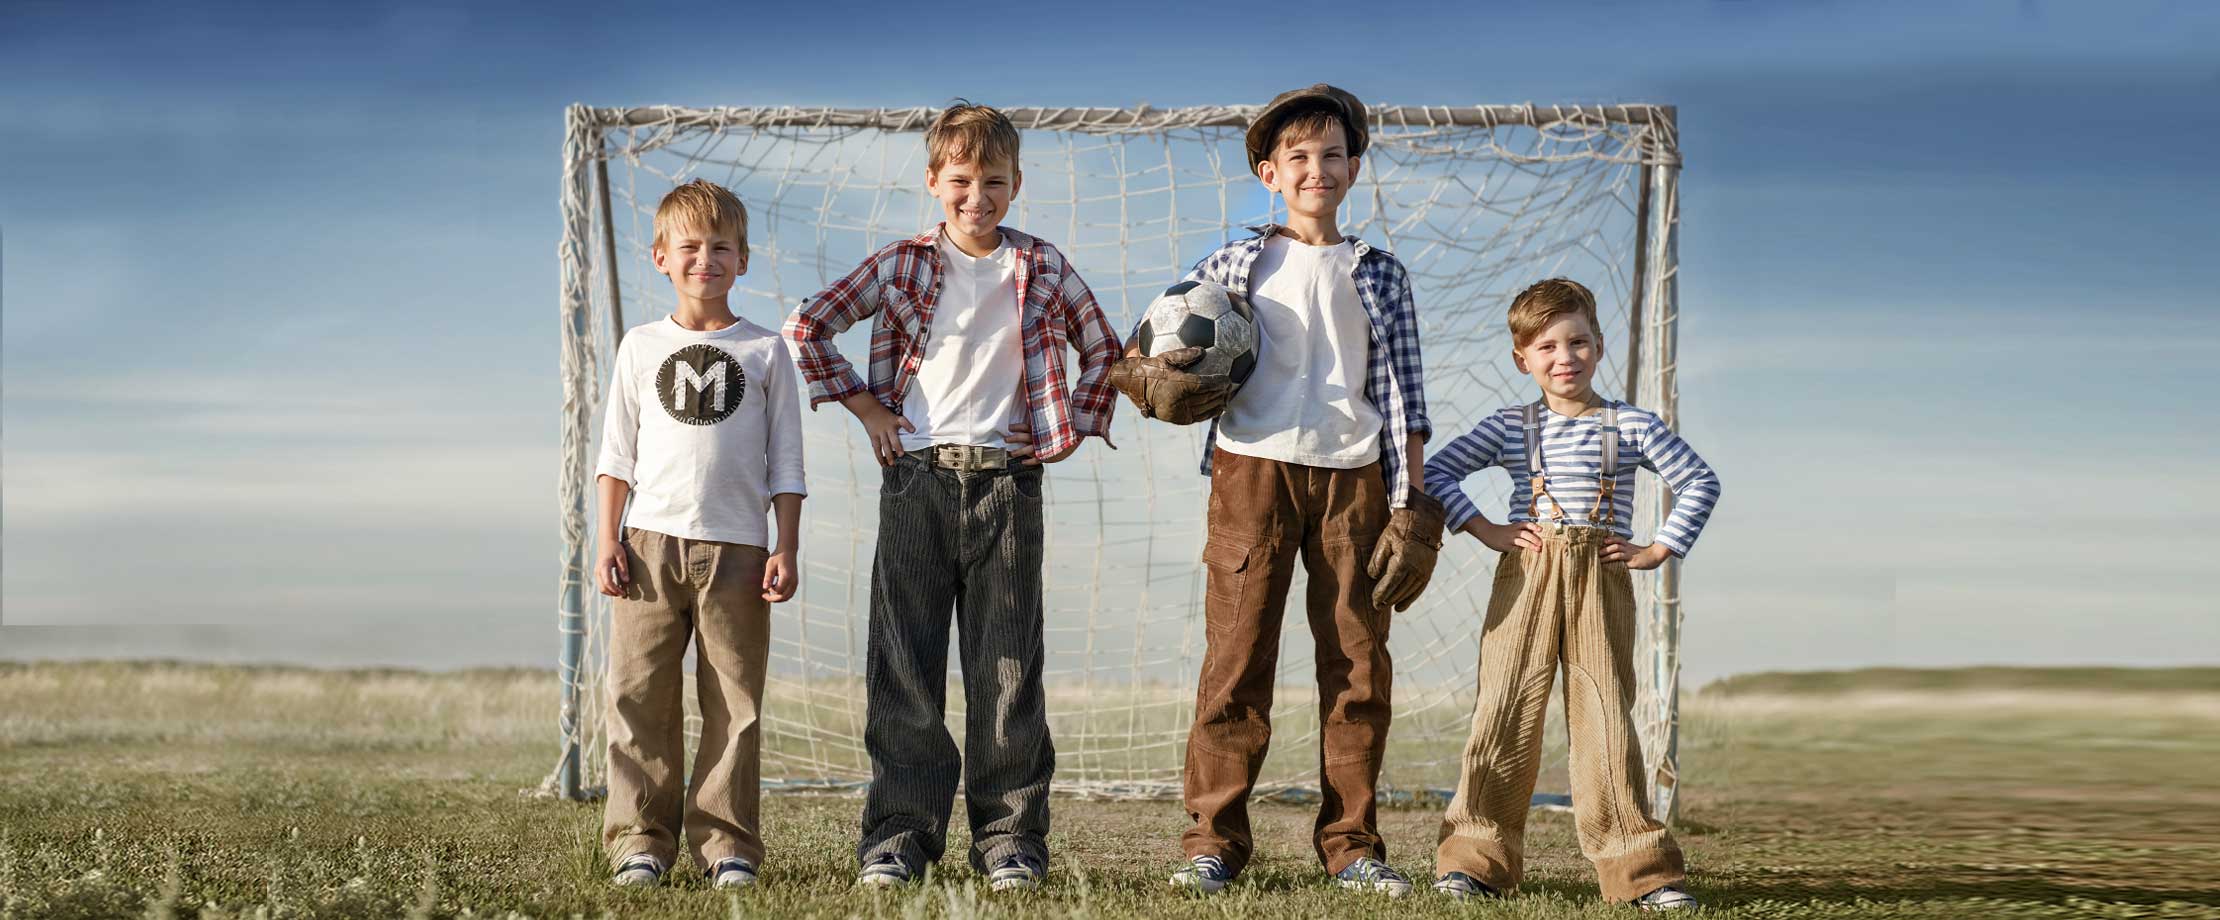 Vier Buben stehen lächelnd im Freien vor einem Tor. Sie tragen Cordhosen und karierte Hemden. Der größte von ihnen trägt Torwarthandschuhe und hält einen Fußball.